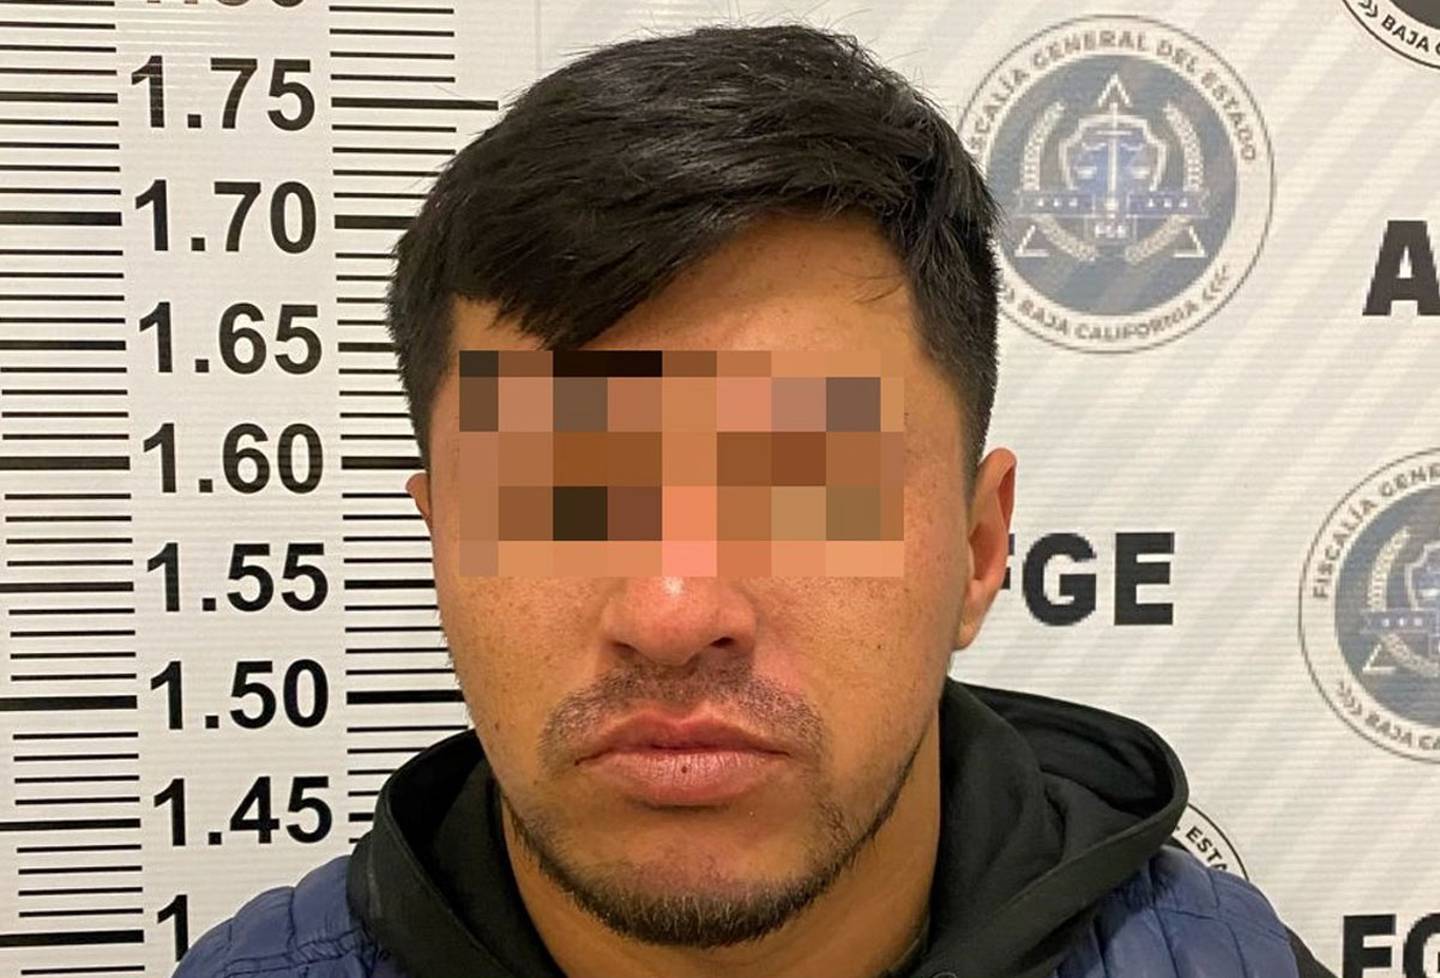 El detenido está identificado como Manuel Junior “N”.